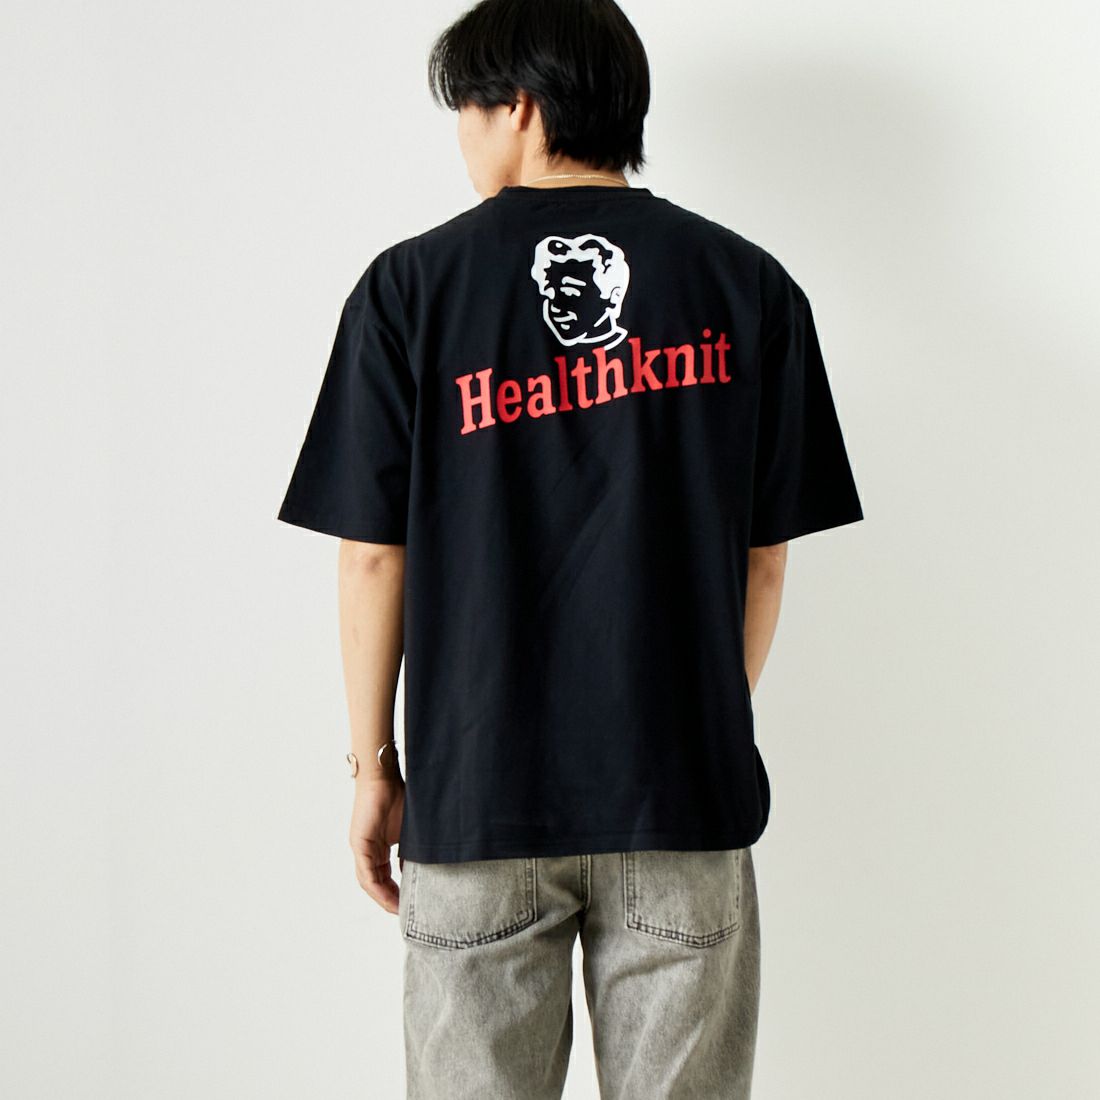 Health knit [ヘルスニット] プリントTシャツ [HR24S-M013]